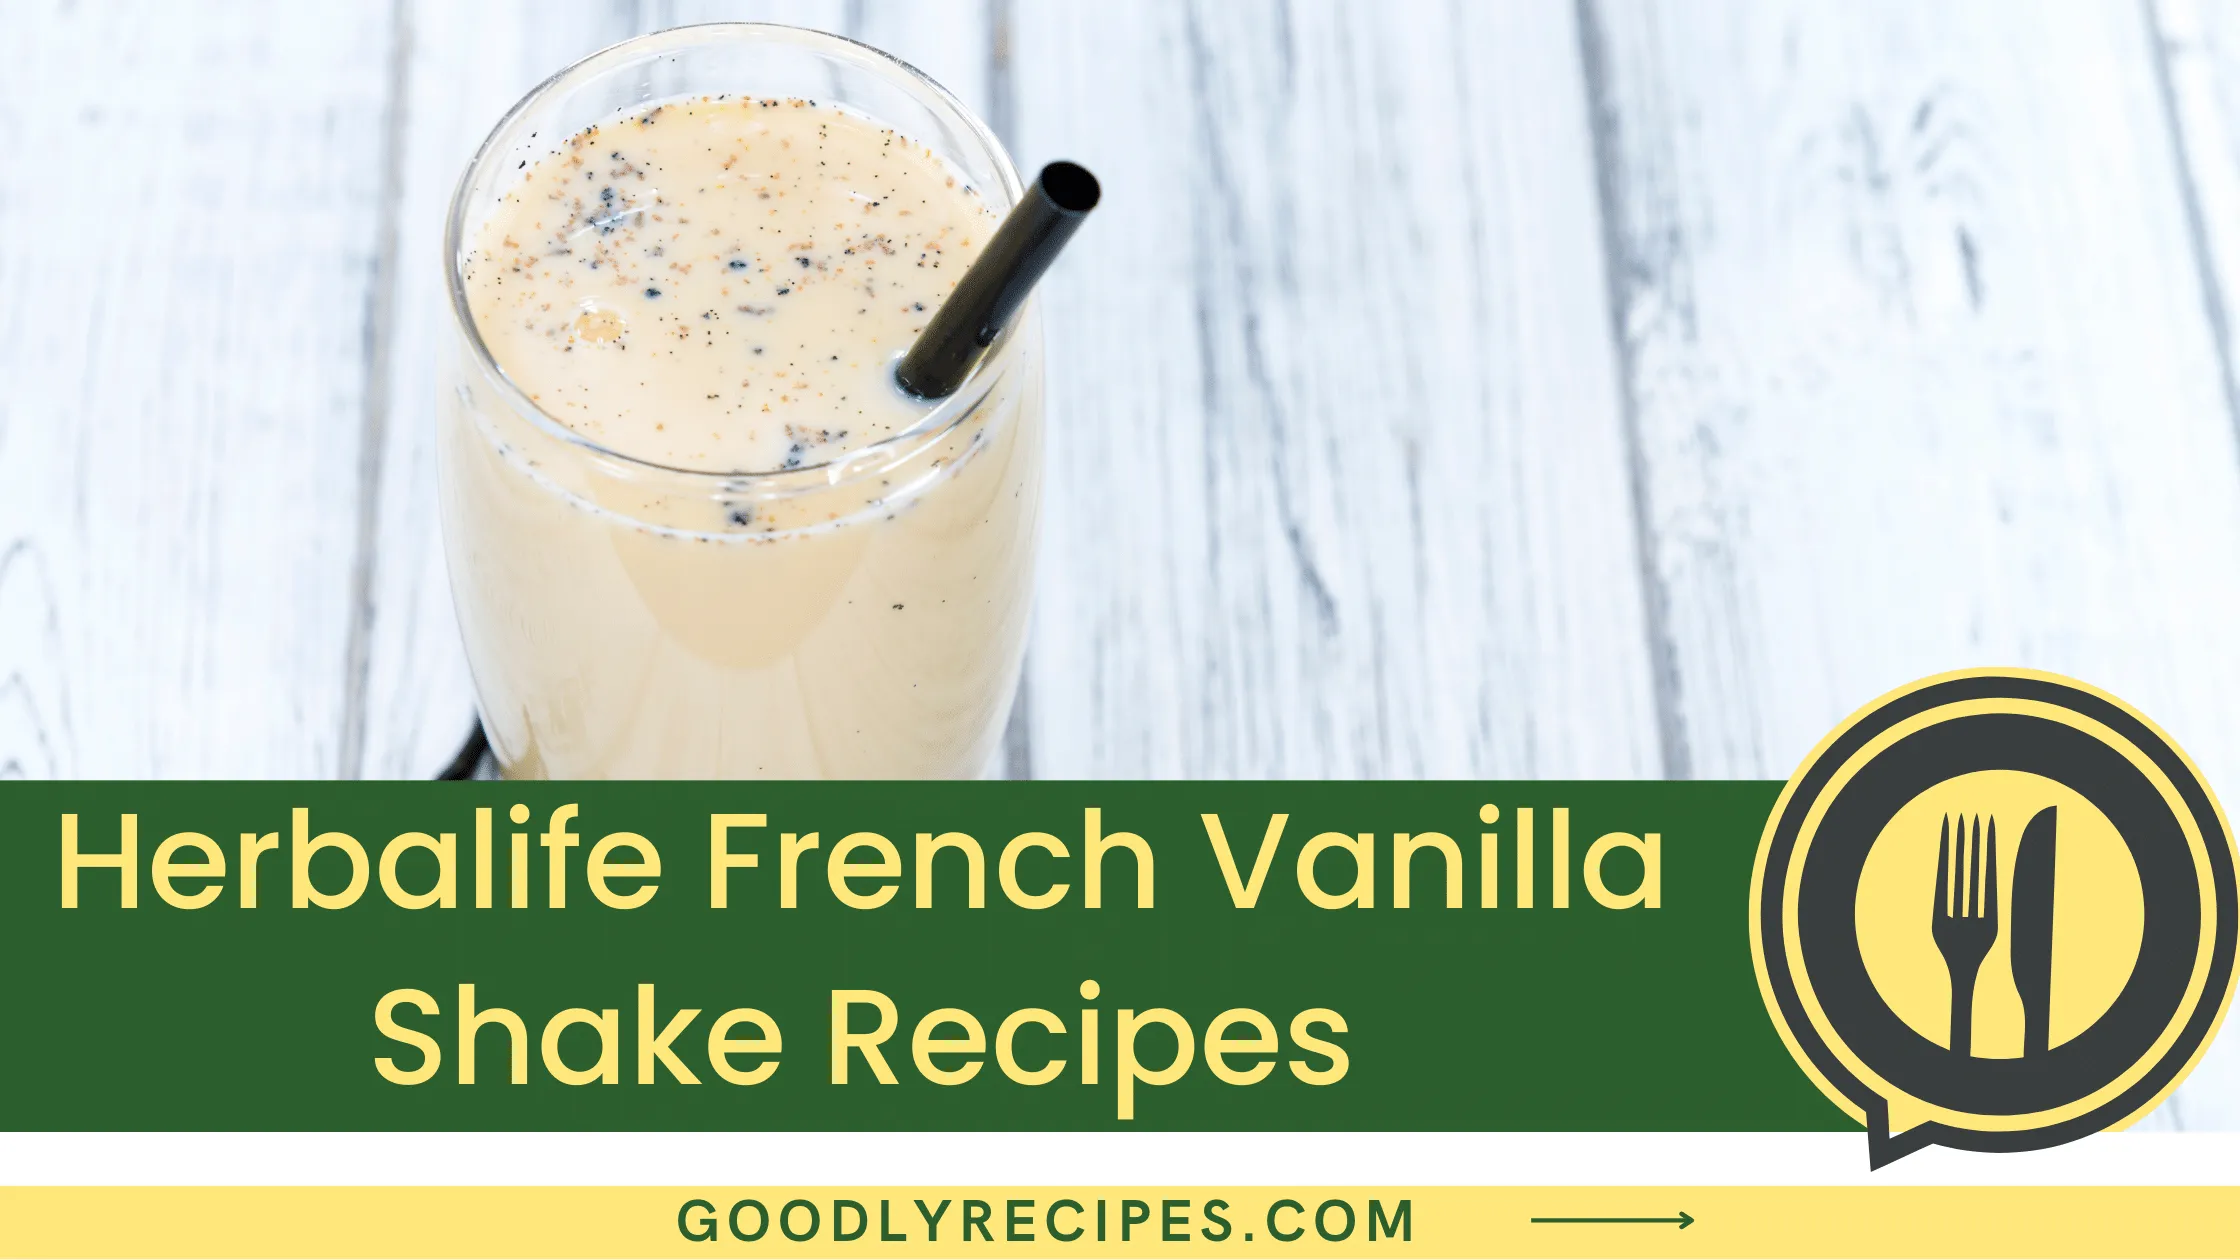 What is Herbalife French Vanilla Shake?